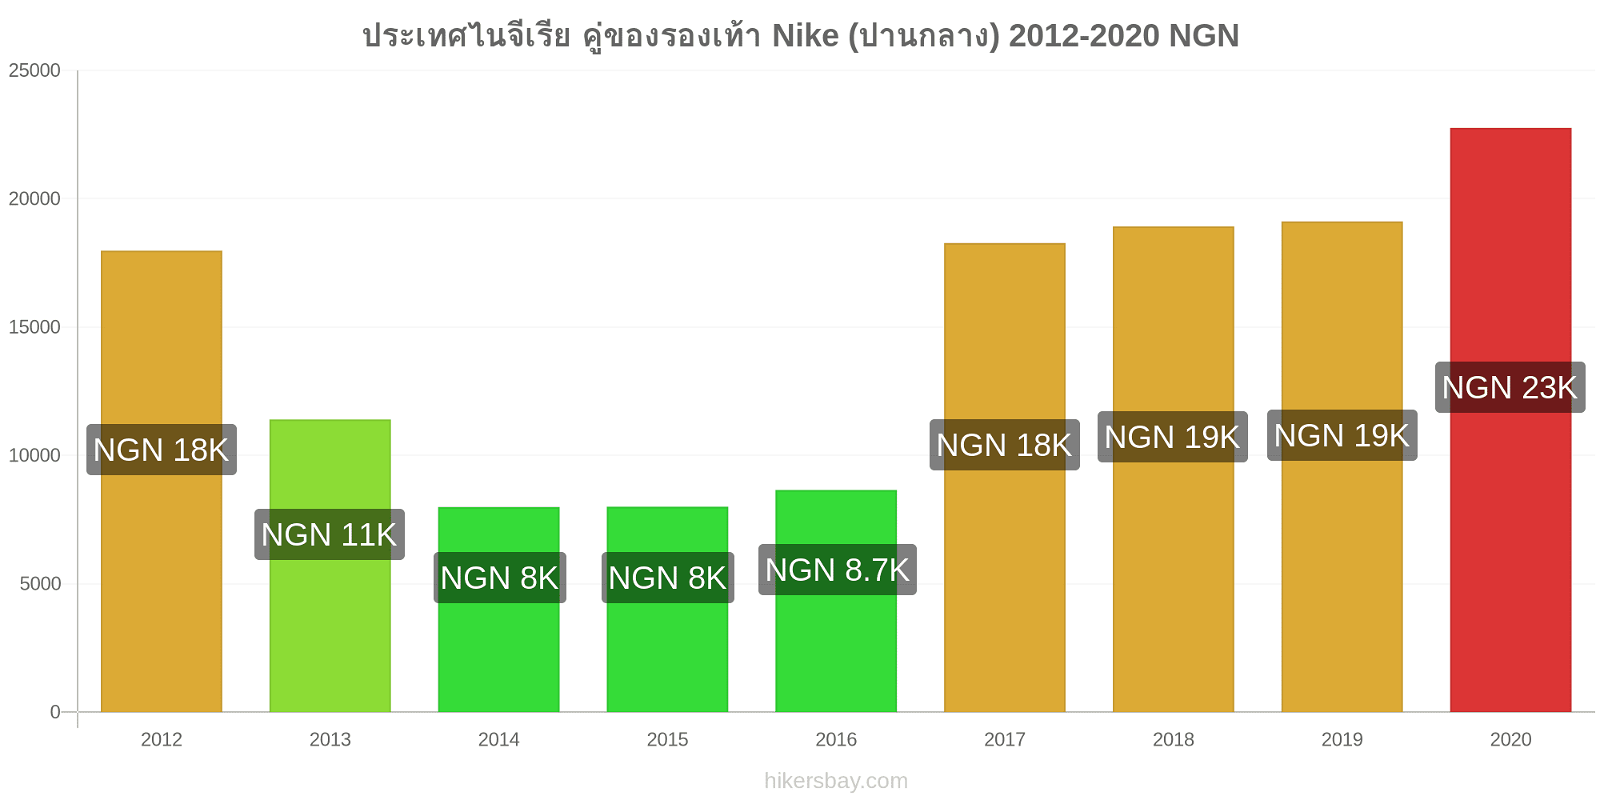 ประเทศไนจีเรีย การเปลี่ยนแปลงราคา คู่ของรองเท้า Nike (ปานกลาง) hikersbay.com